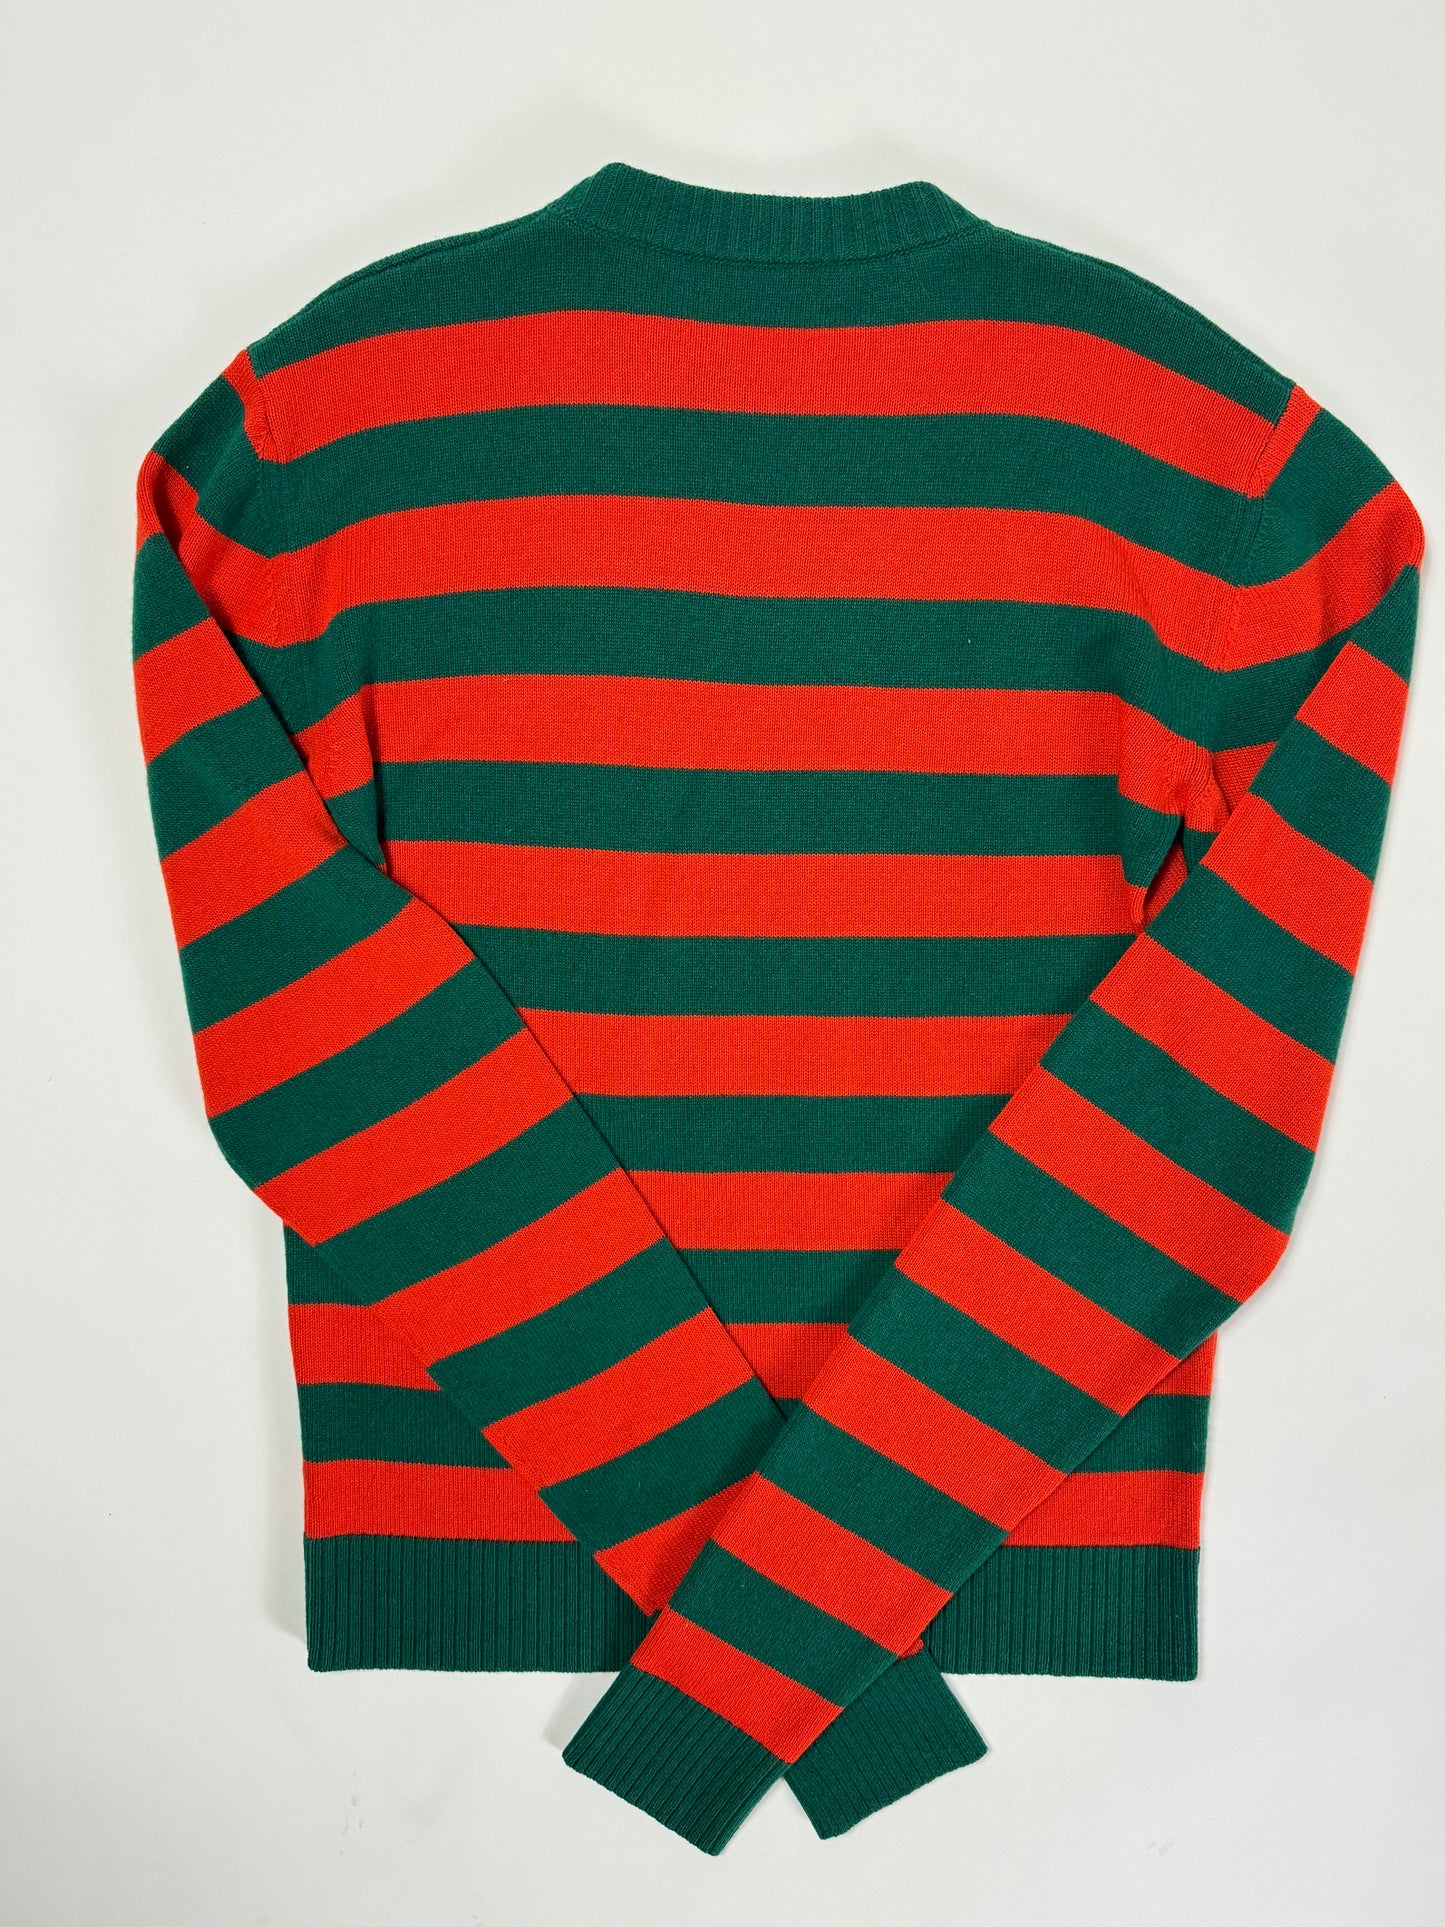 Loewe Striped Wool Sweater